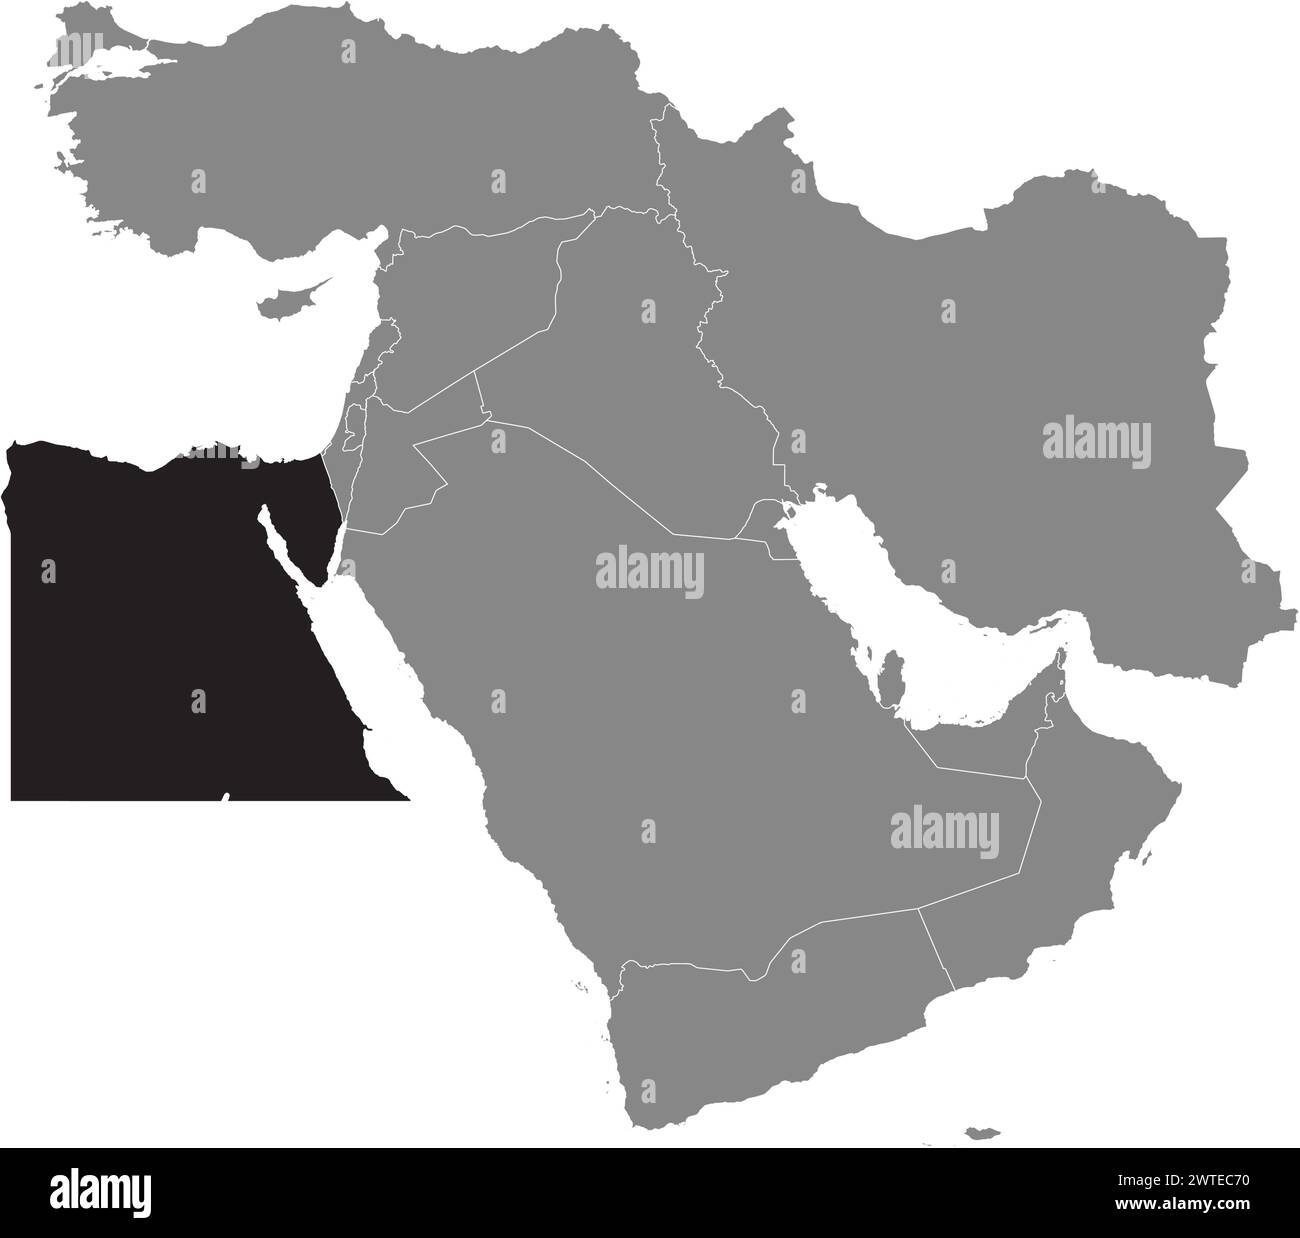 Carte noire de L'EGYPTE à l'intérieur de la carte grise du moyen-Orient Illustration de Vecteur